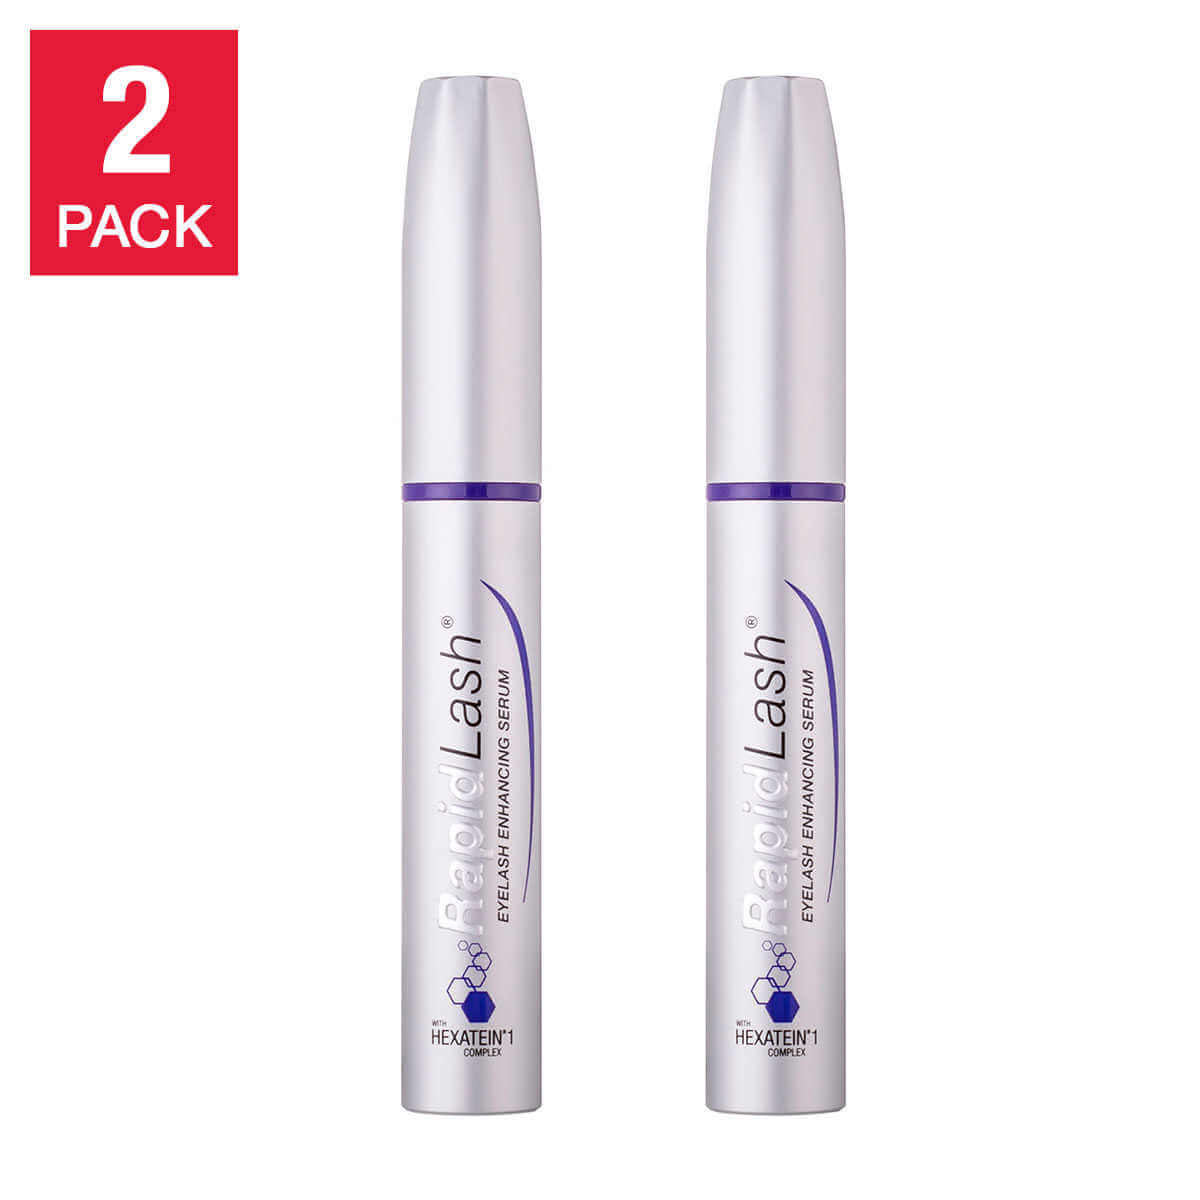 RapidLash Eyelash Enhancing Serum - 0.1 fl oz - 2-pack